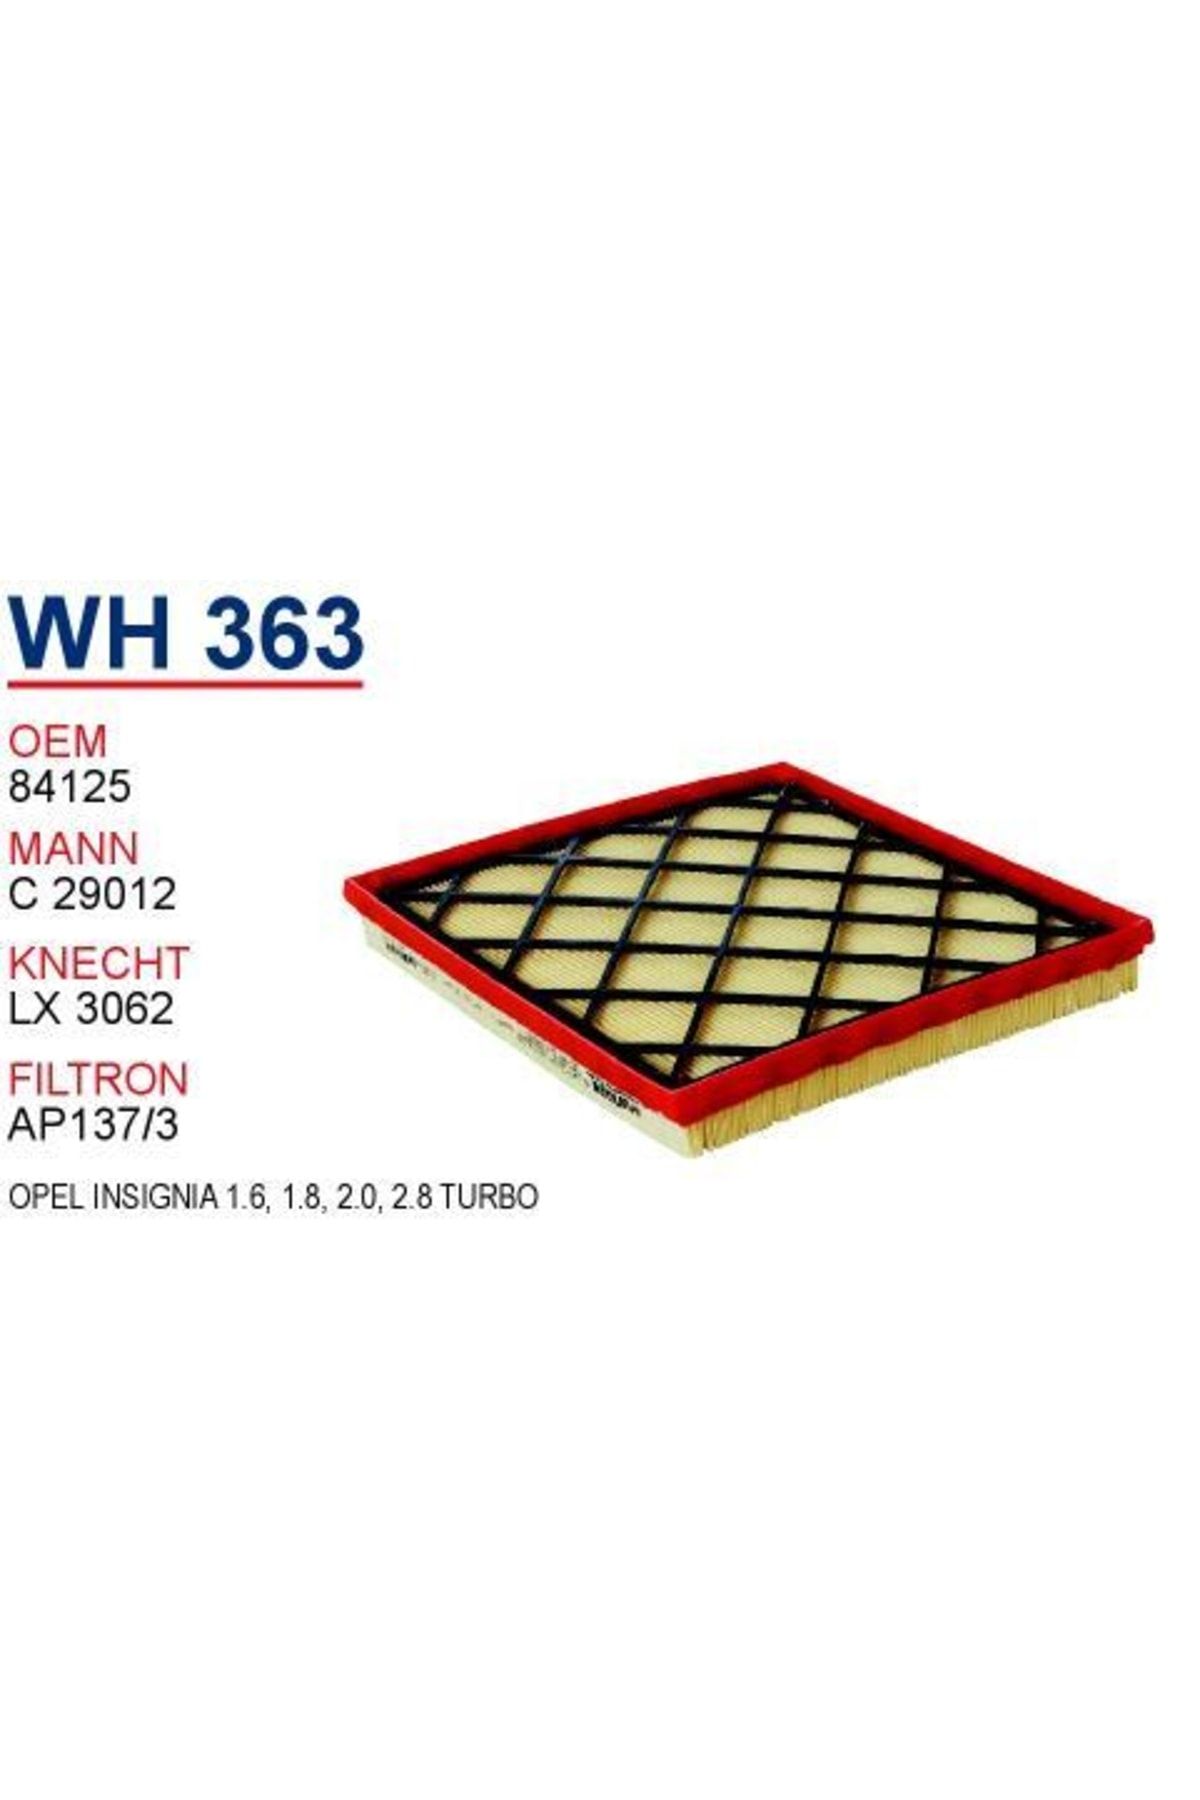 WUNDER 834125 Hava Filtresi Insignia1.6 - 1.8 - 2.0 - 2.8 Turbo